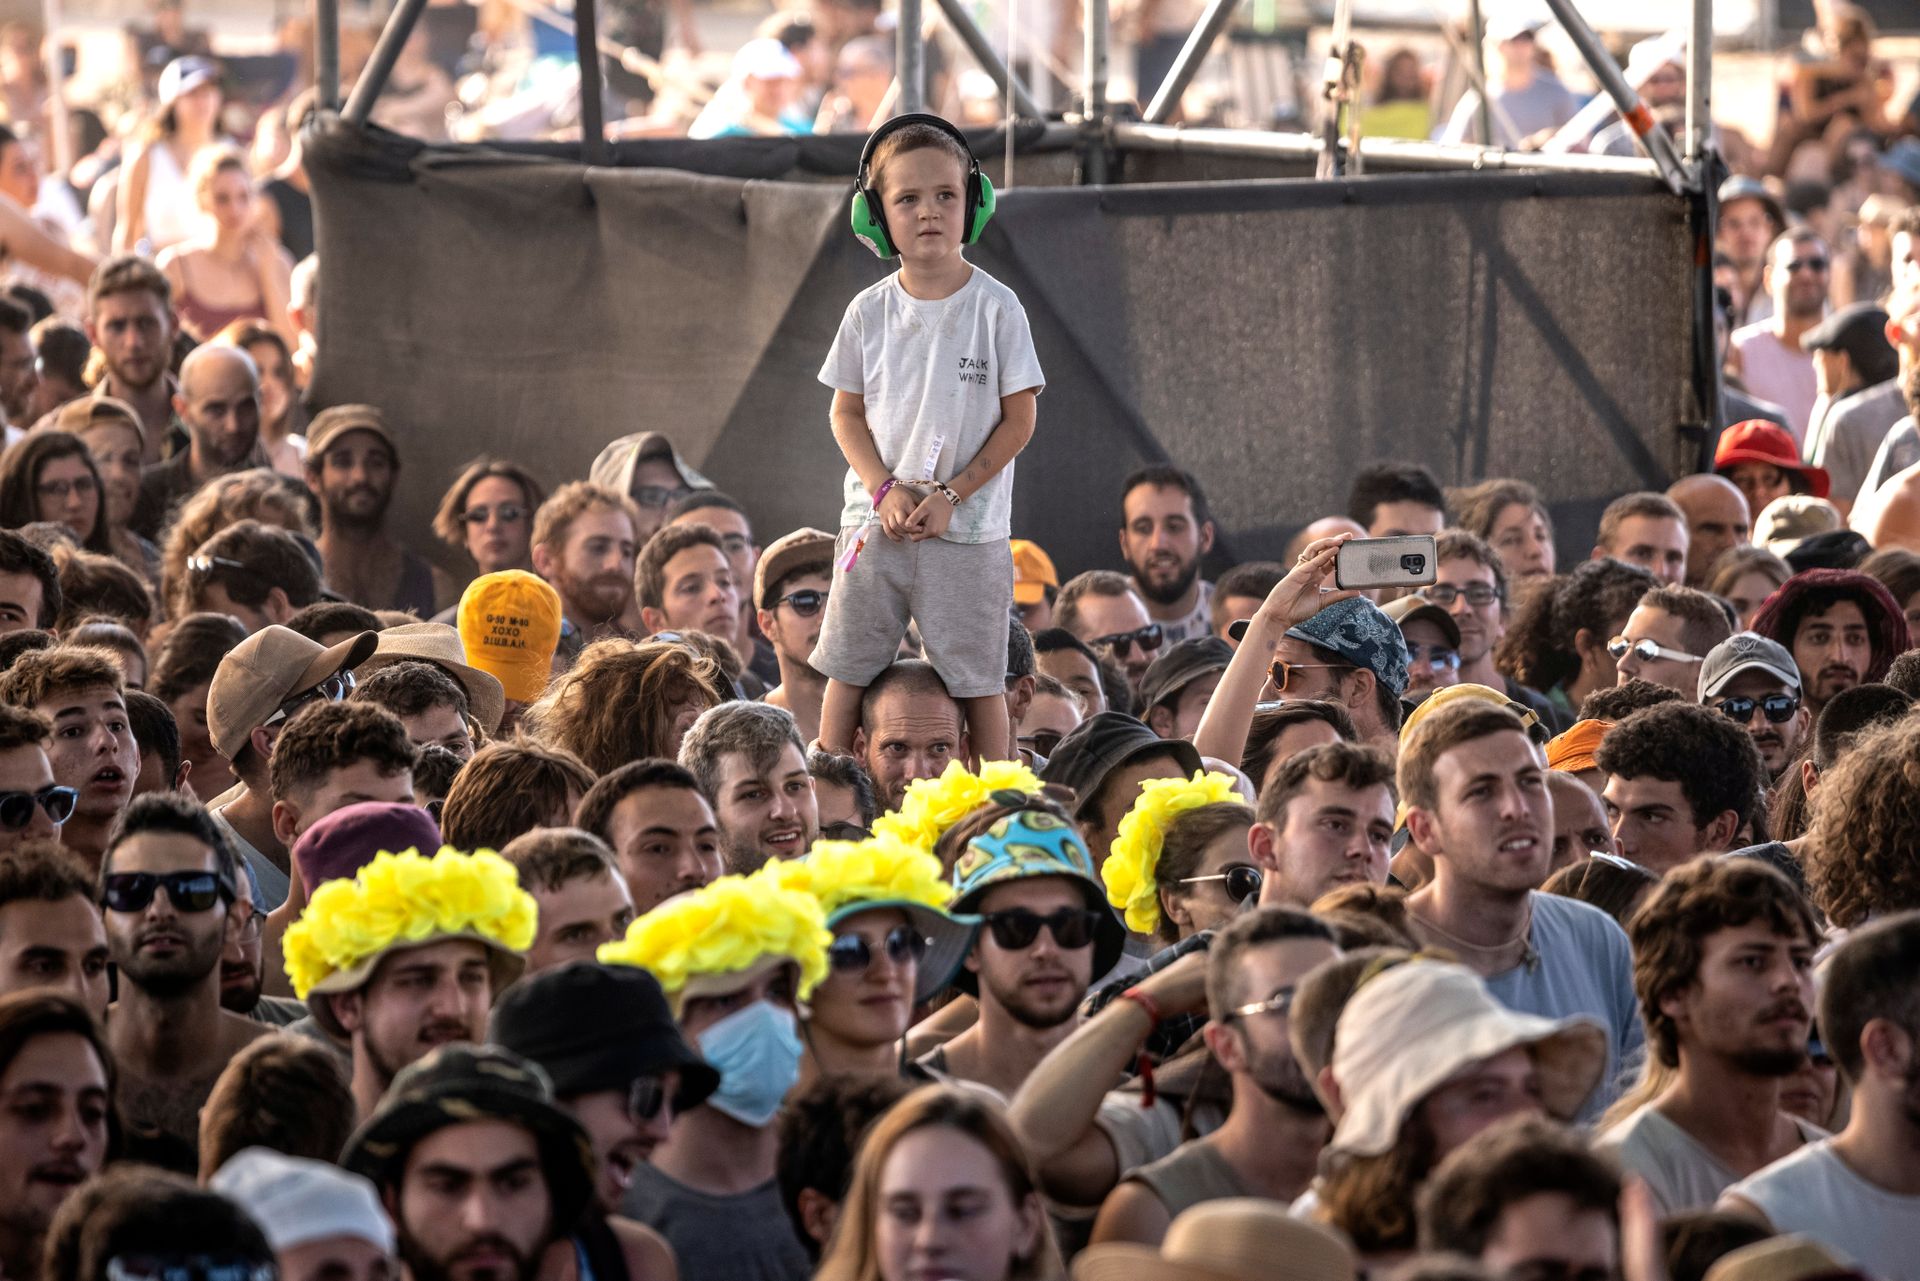 En gutt med hvit T-skjorte, grå shorts og grønne hørselsvern, står på skulderen til en mann i en stor folkemengde.